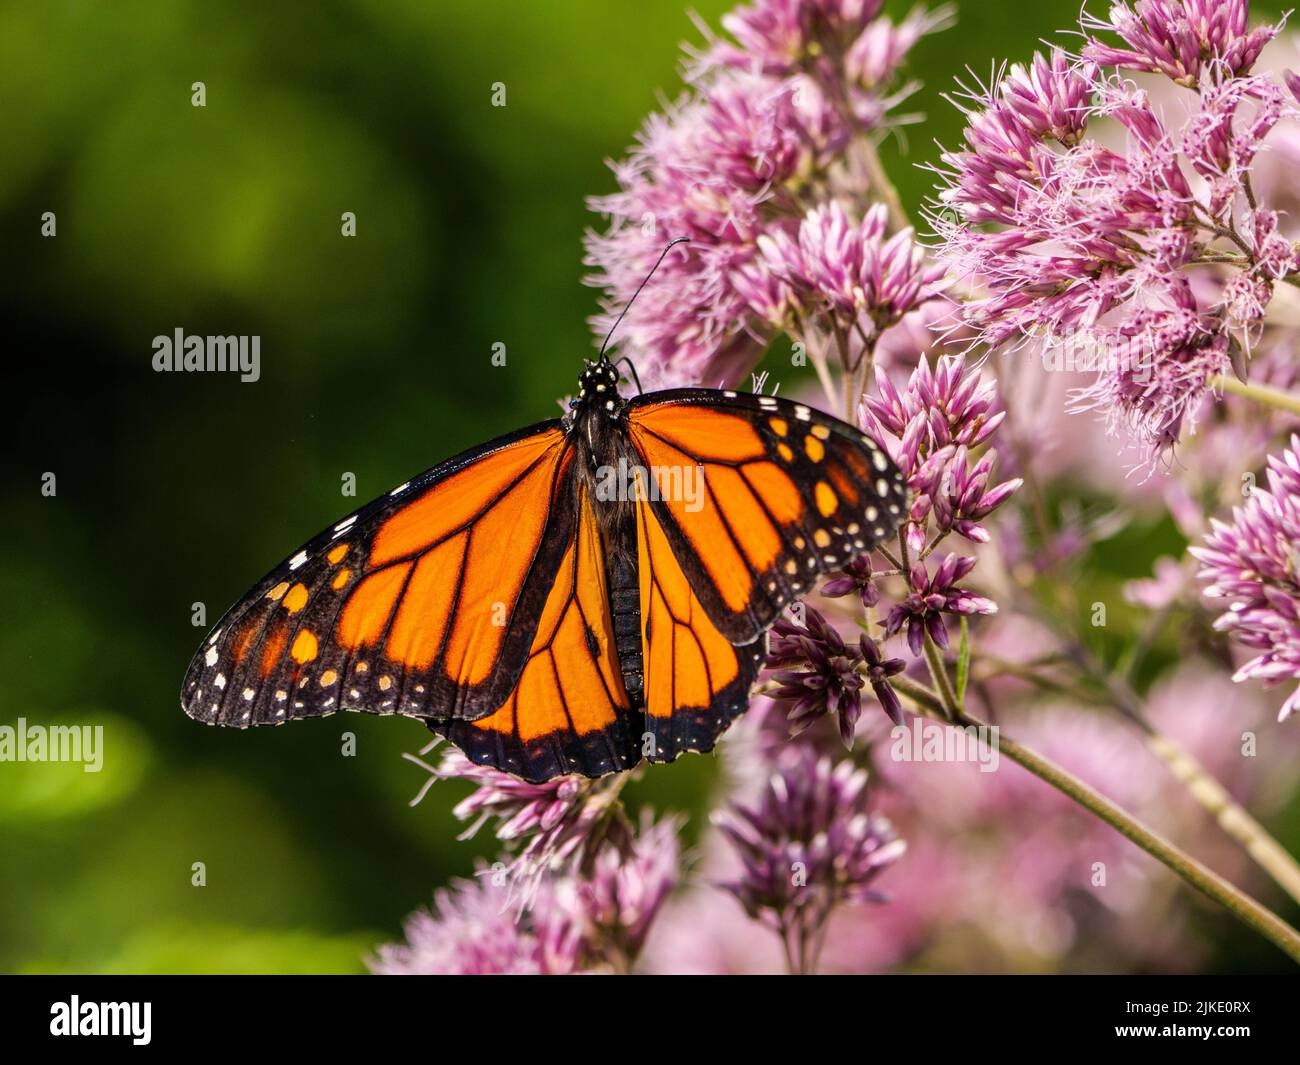 Monarch butterfly on sweet Joe-Pye weed flowers. Stock Photo